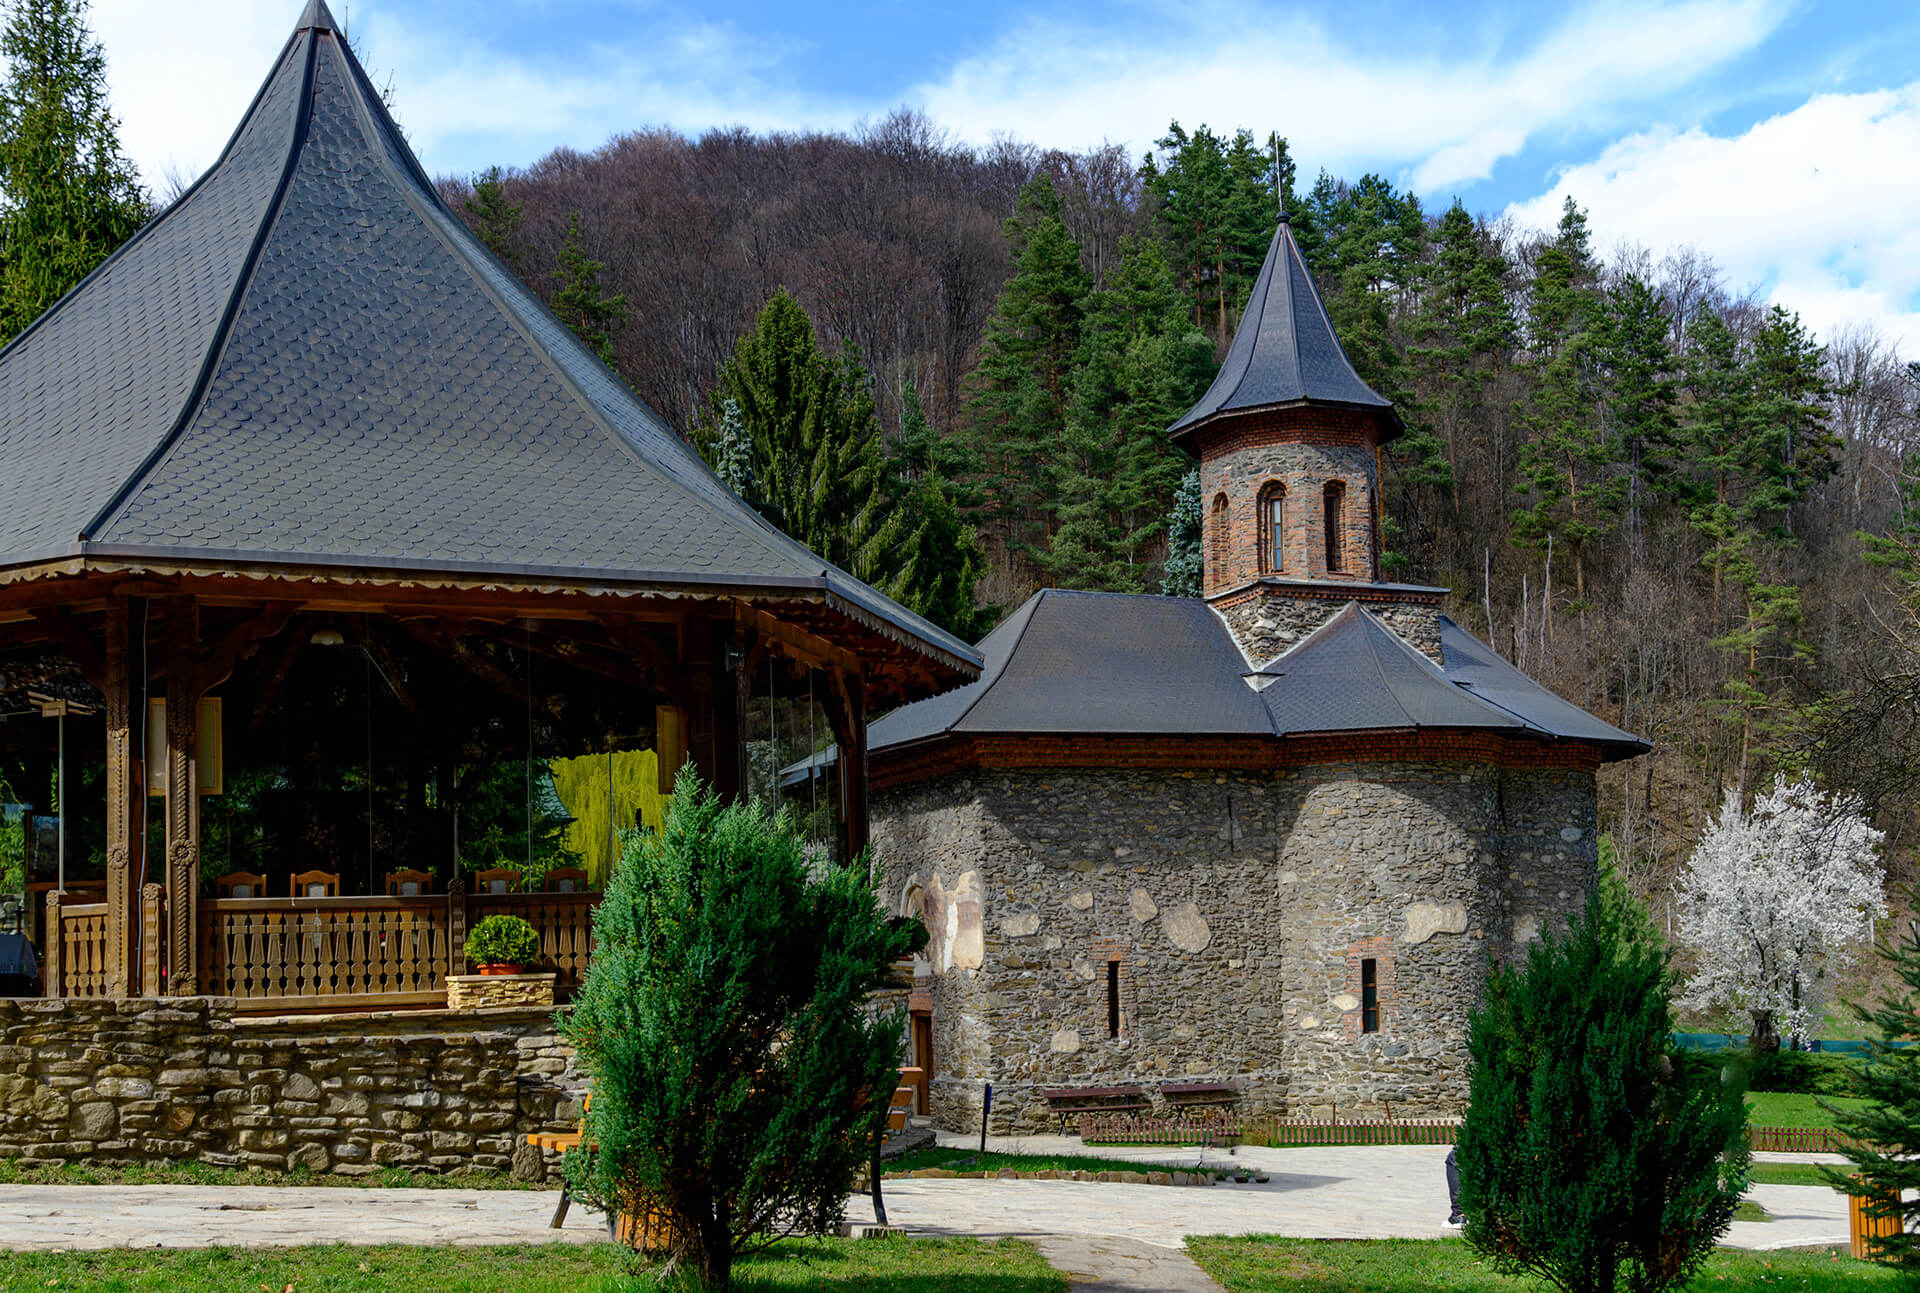 anastirea Prislop ramane una dintre cele mai cunoscute manastiri din Romania.